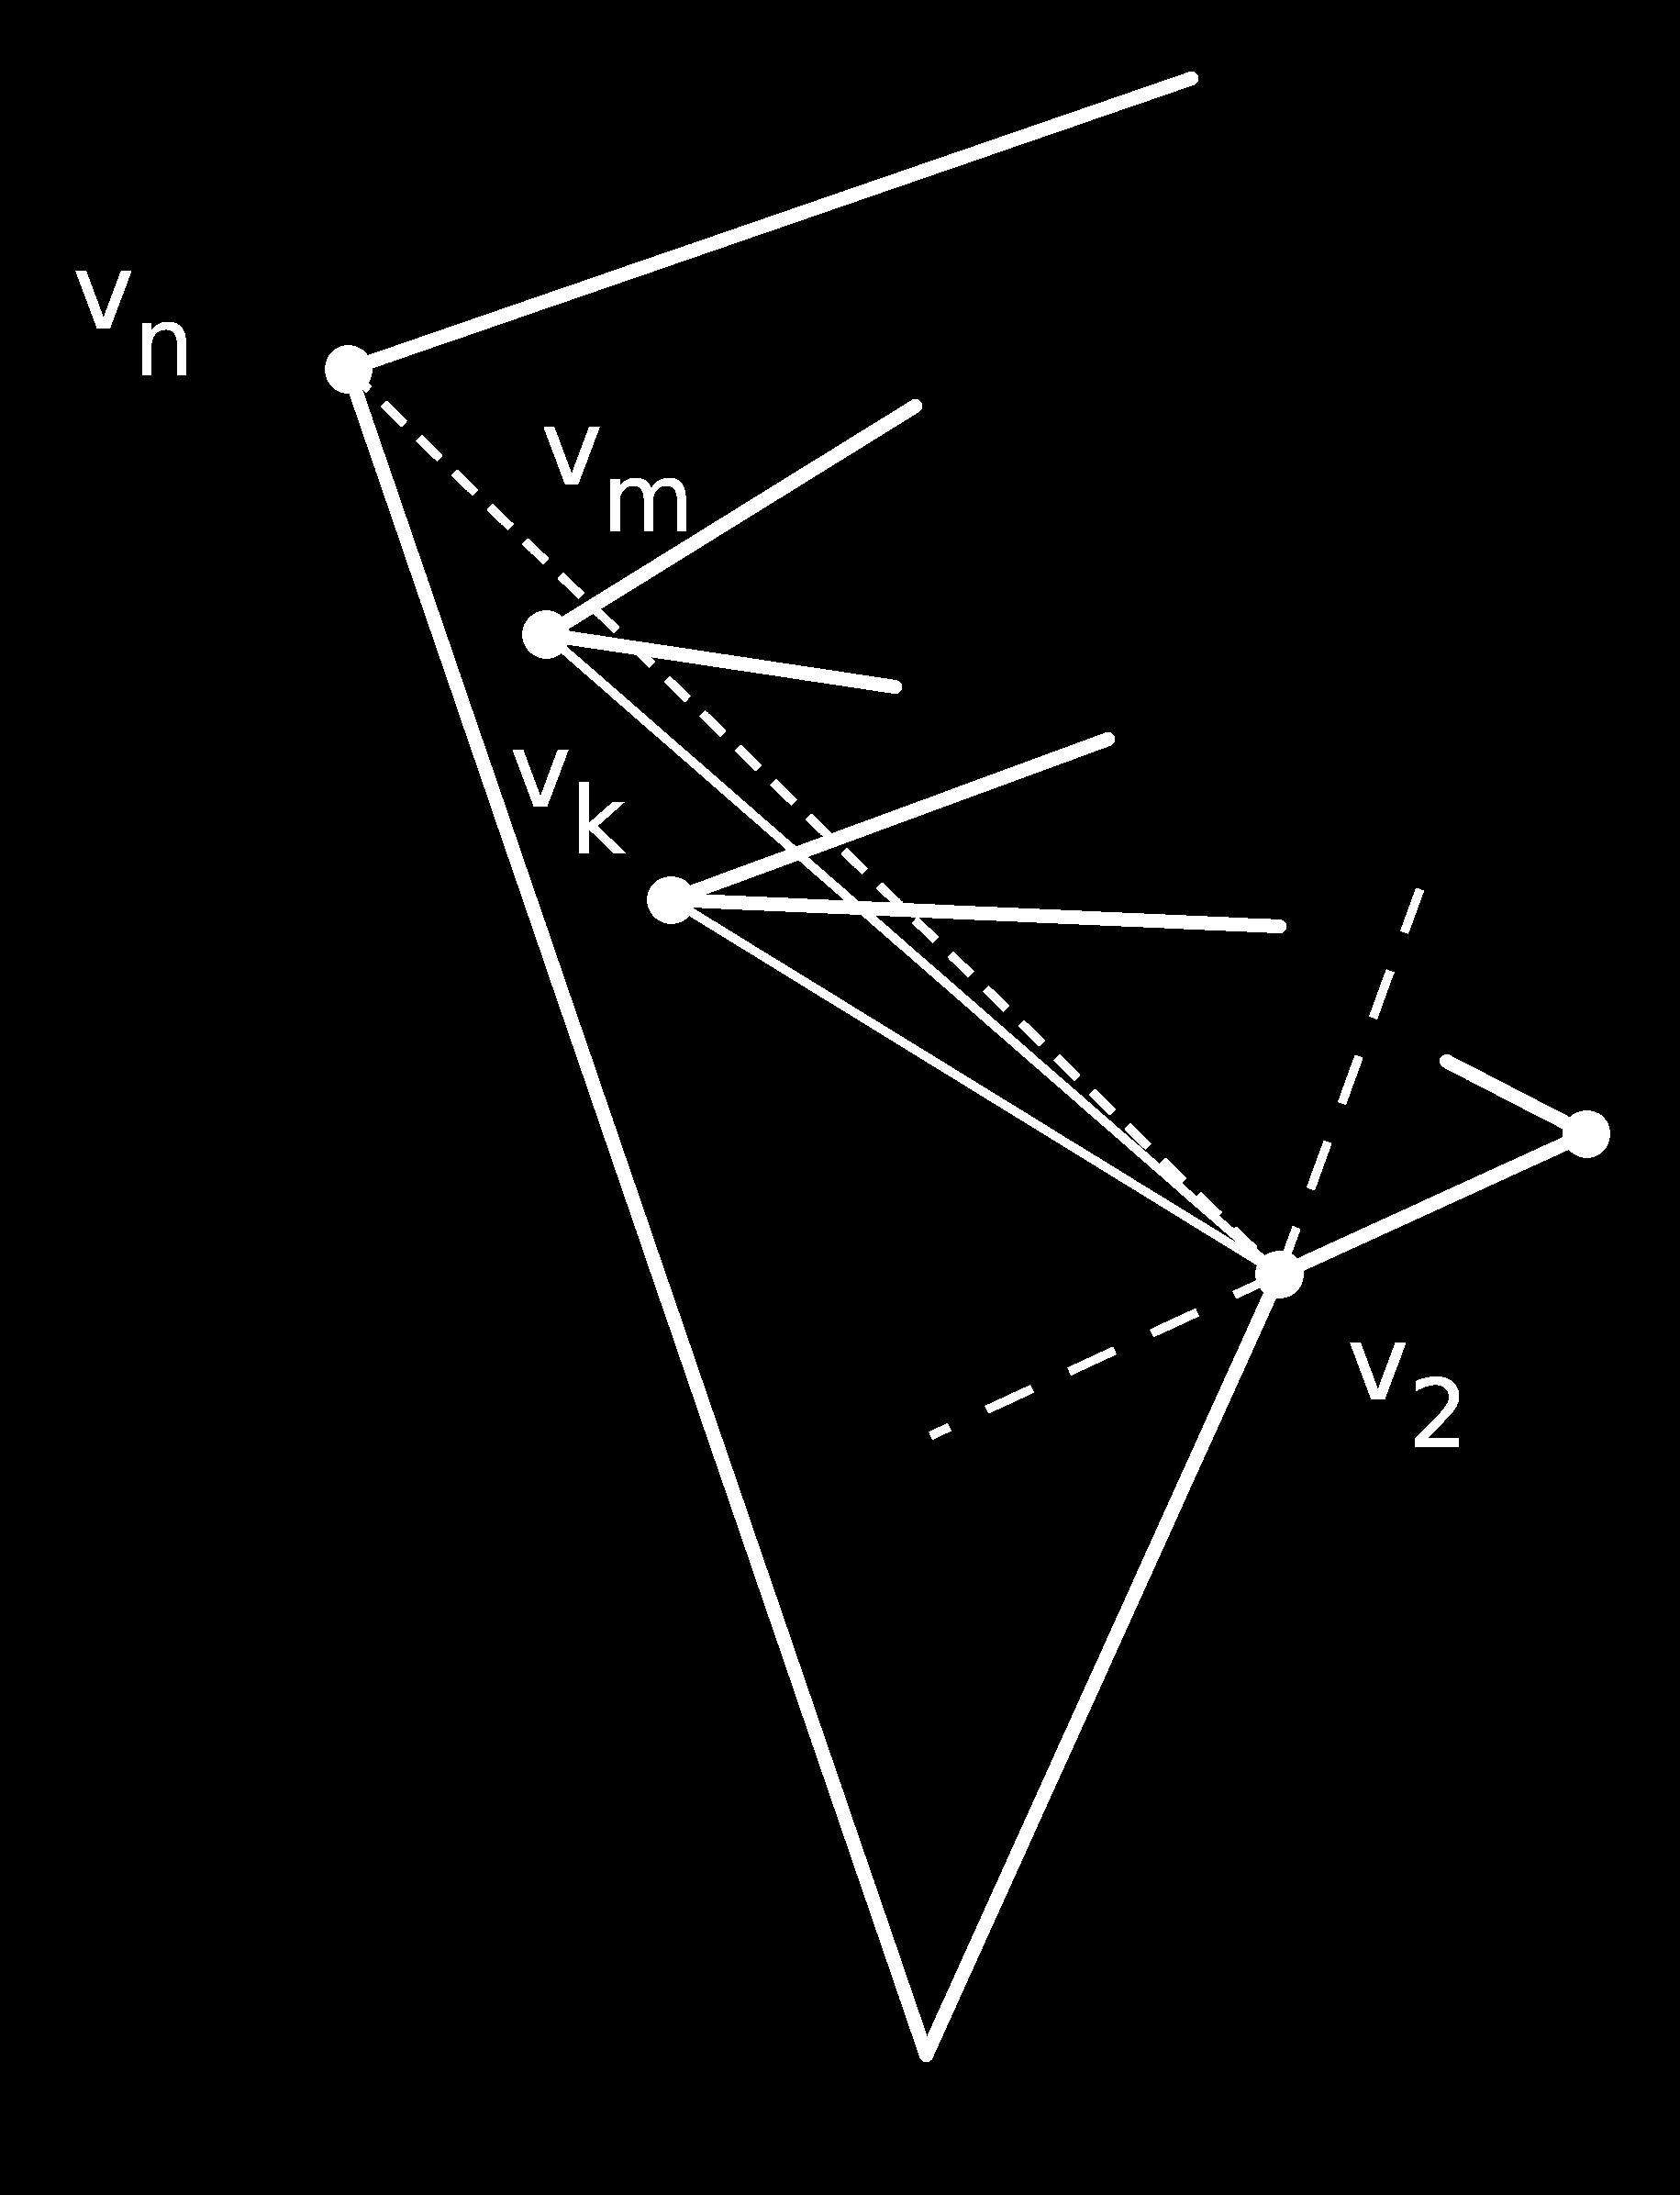 3.3. ábra. mát eggyel csökkentettük, de a v j v szakasz kibocsájtása során létrejött egy új v konvex csúcs, amely a függőleges irány szerinti felsorolásban egybeesik a v j -vel.